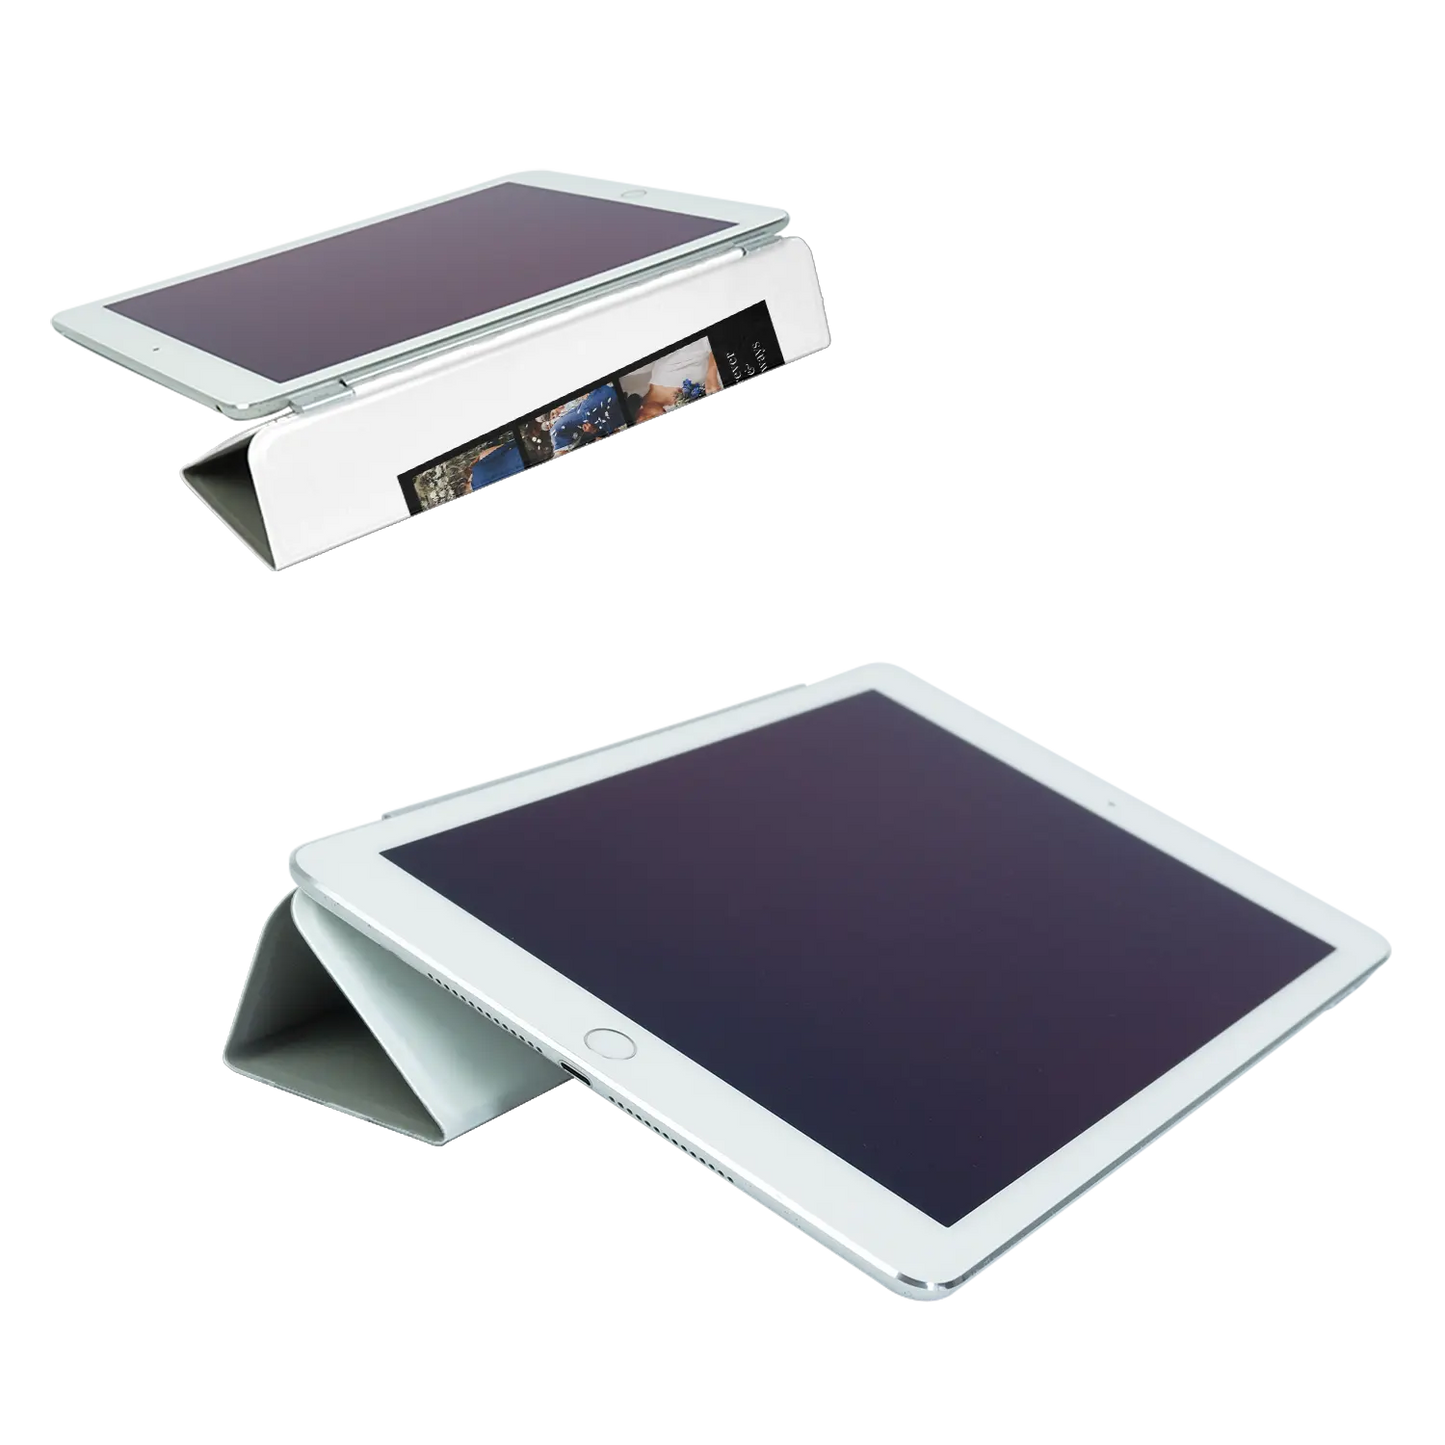 Picture Strip Duo - Custom iPad Case